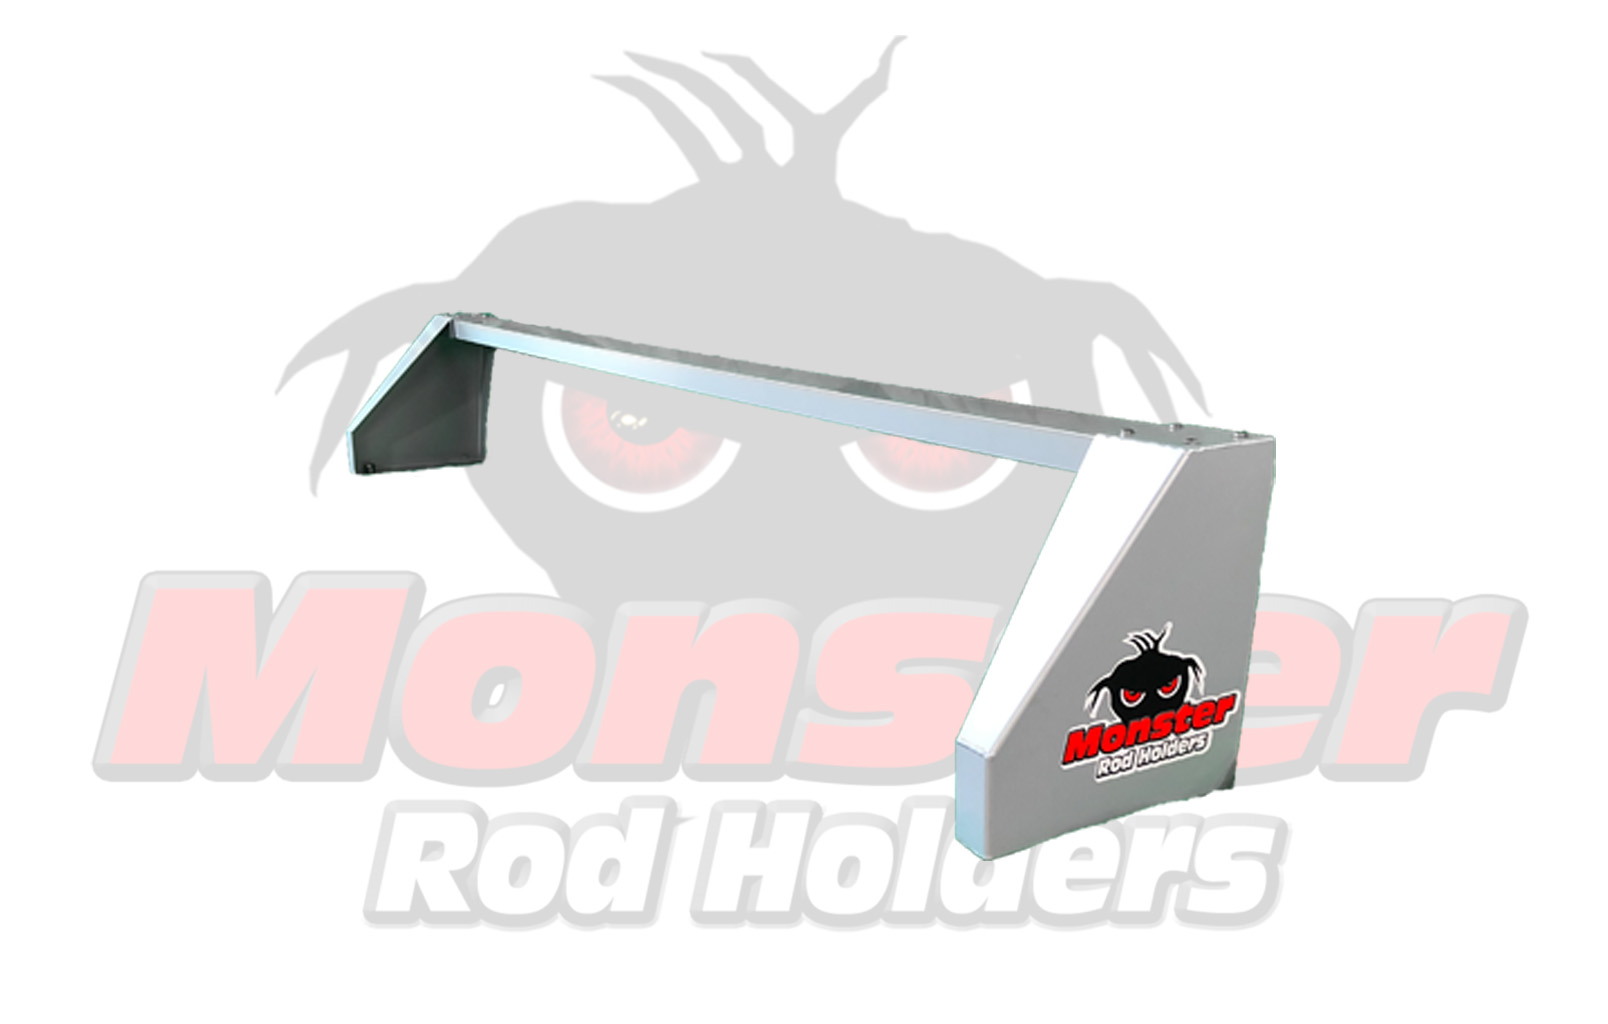 Corner T Bars for Flat Railings – Monster Rod Holders